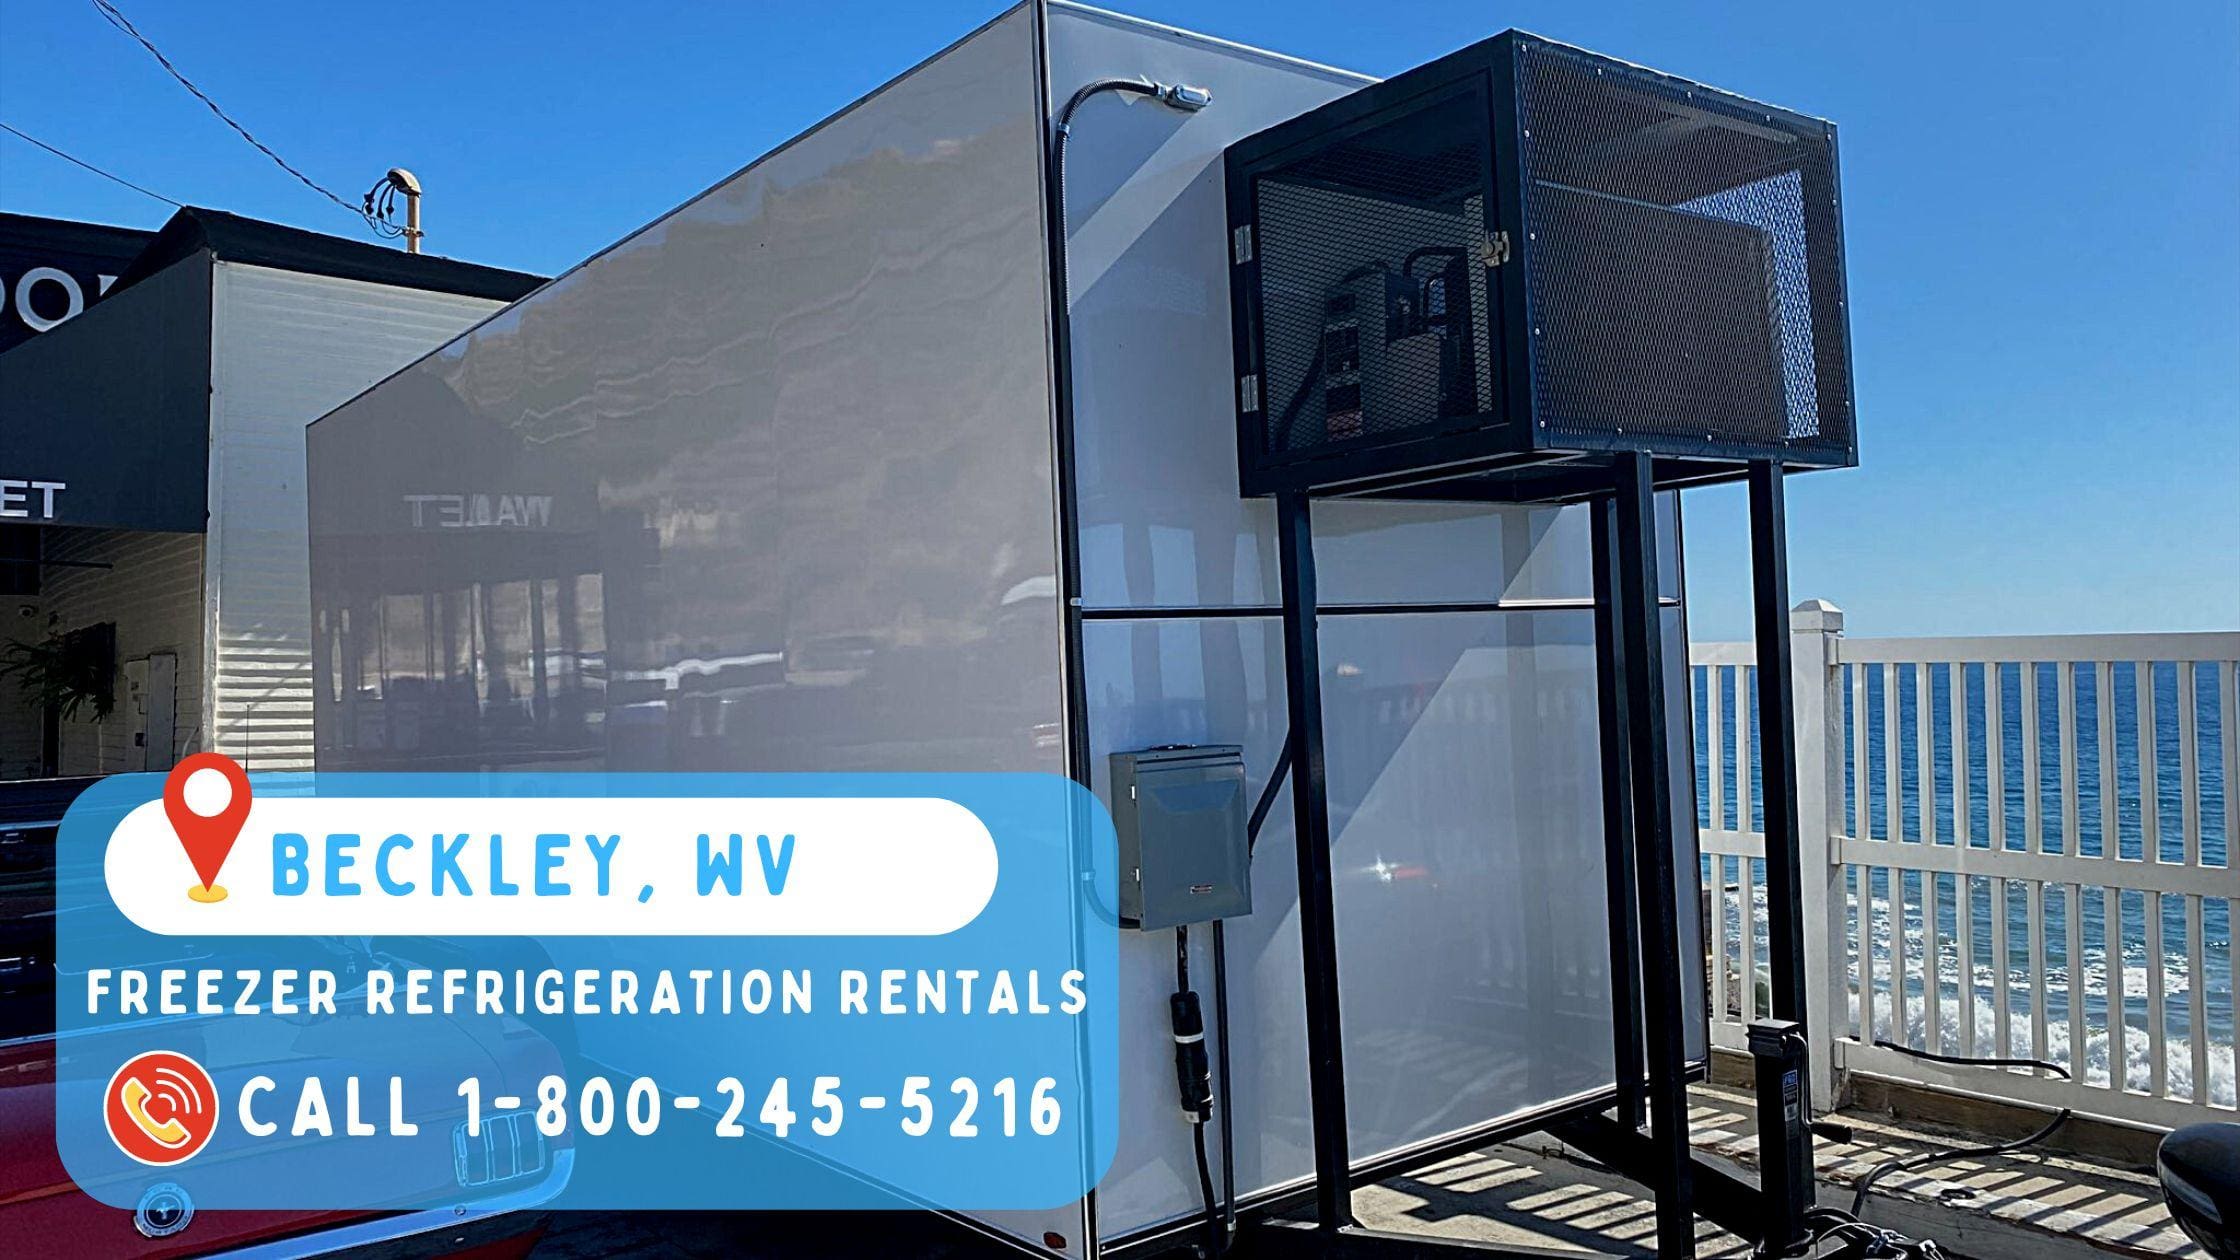 Freezer refrigeration rentals in Beckley, WV